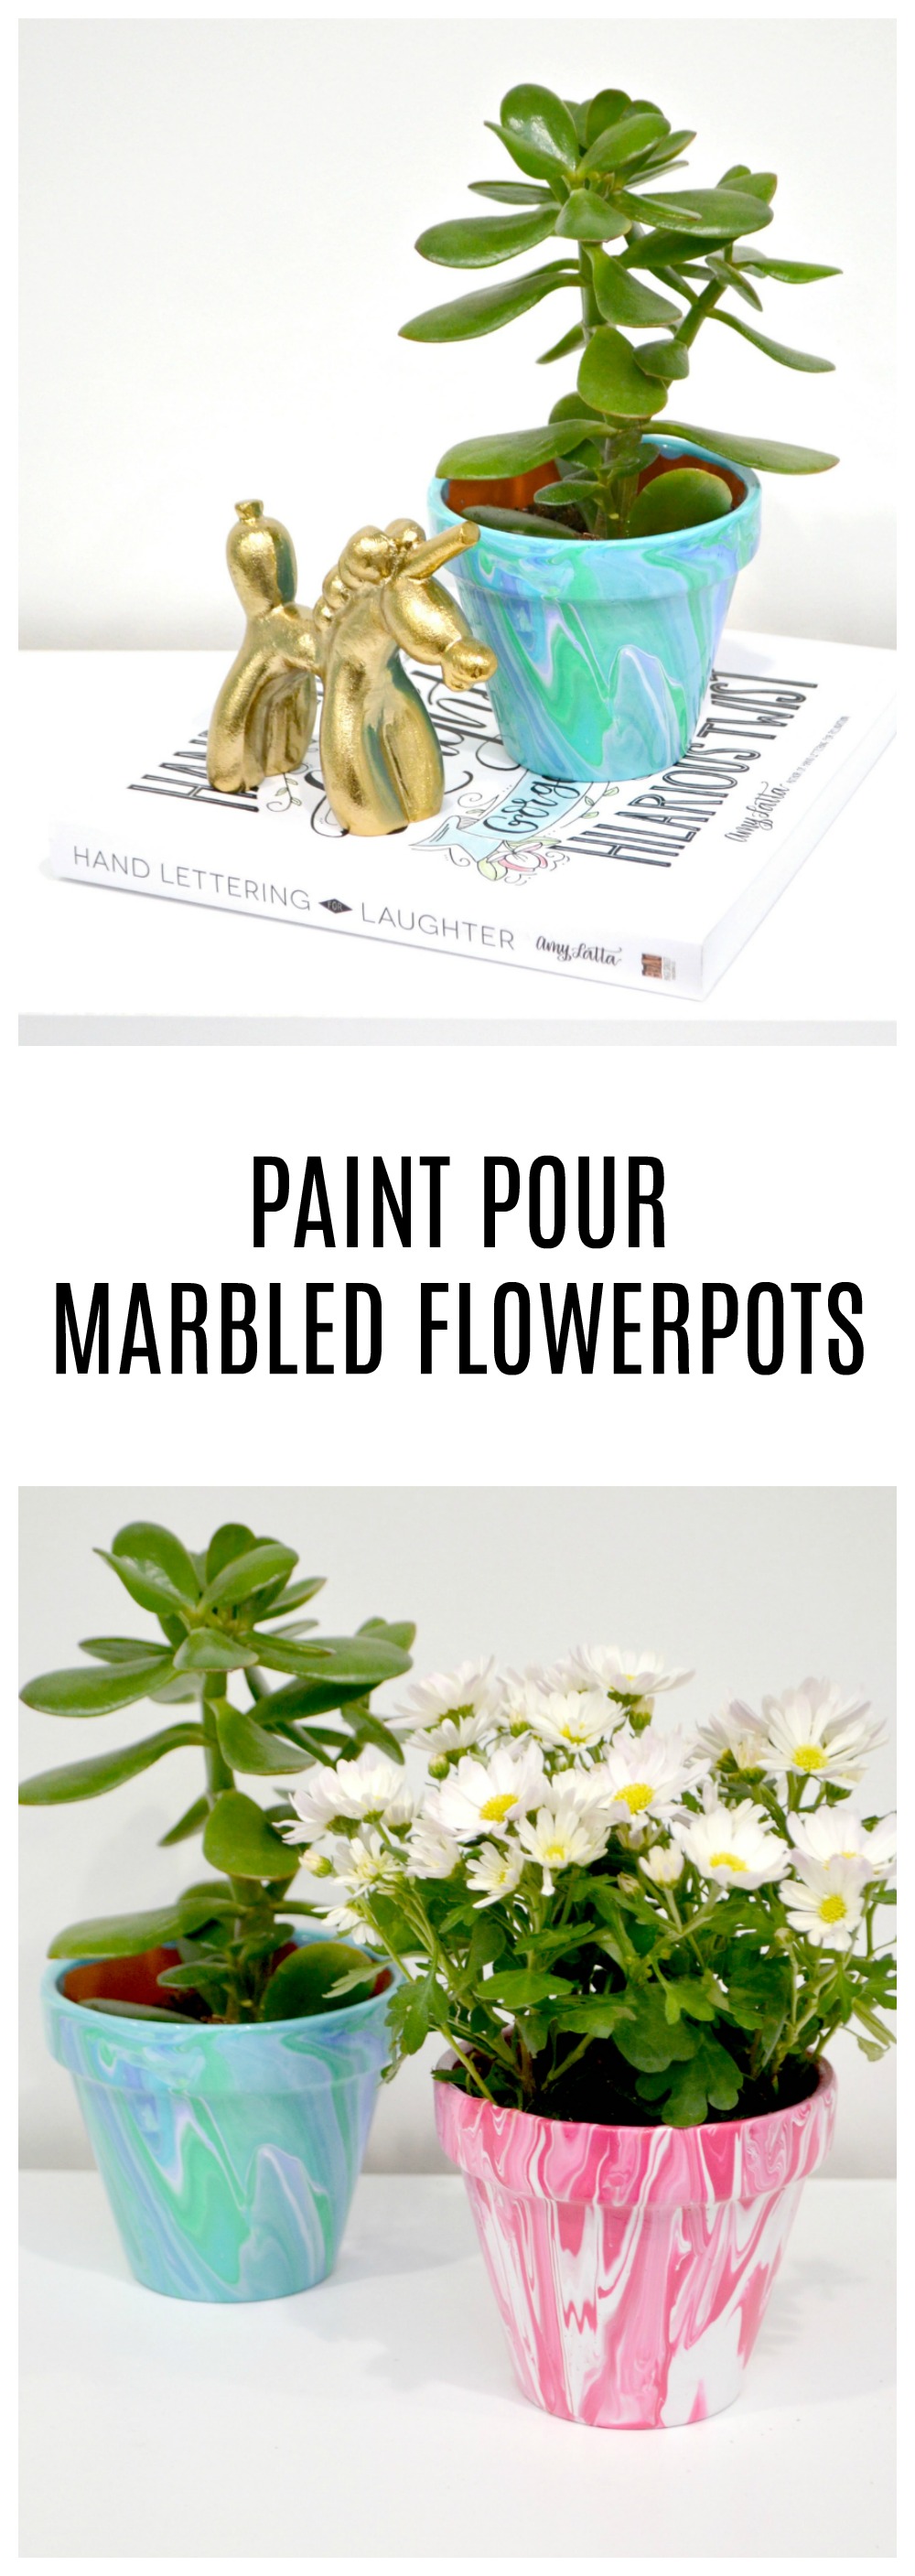 Paint Pour Marbled Flowerpots